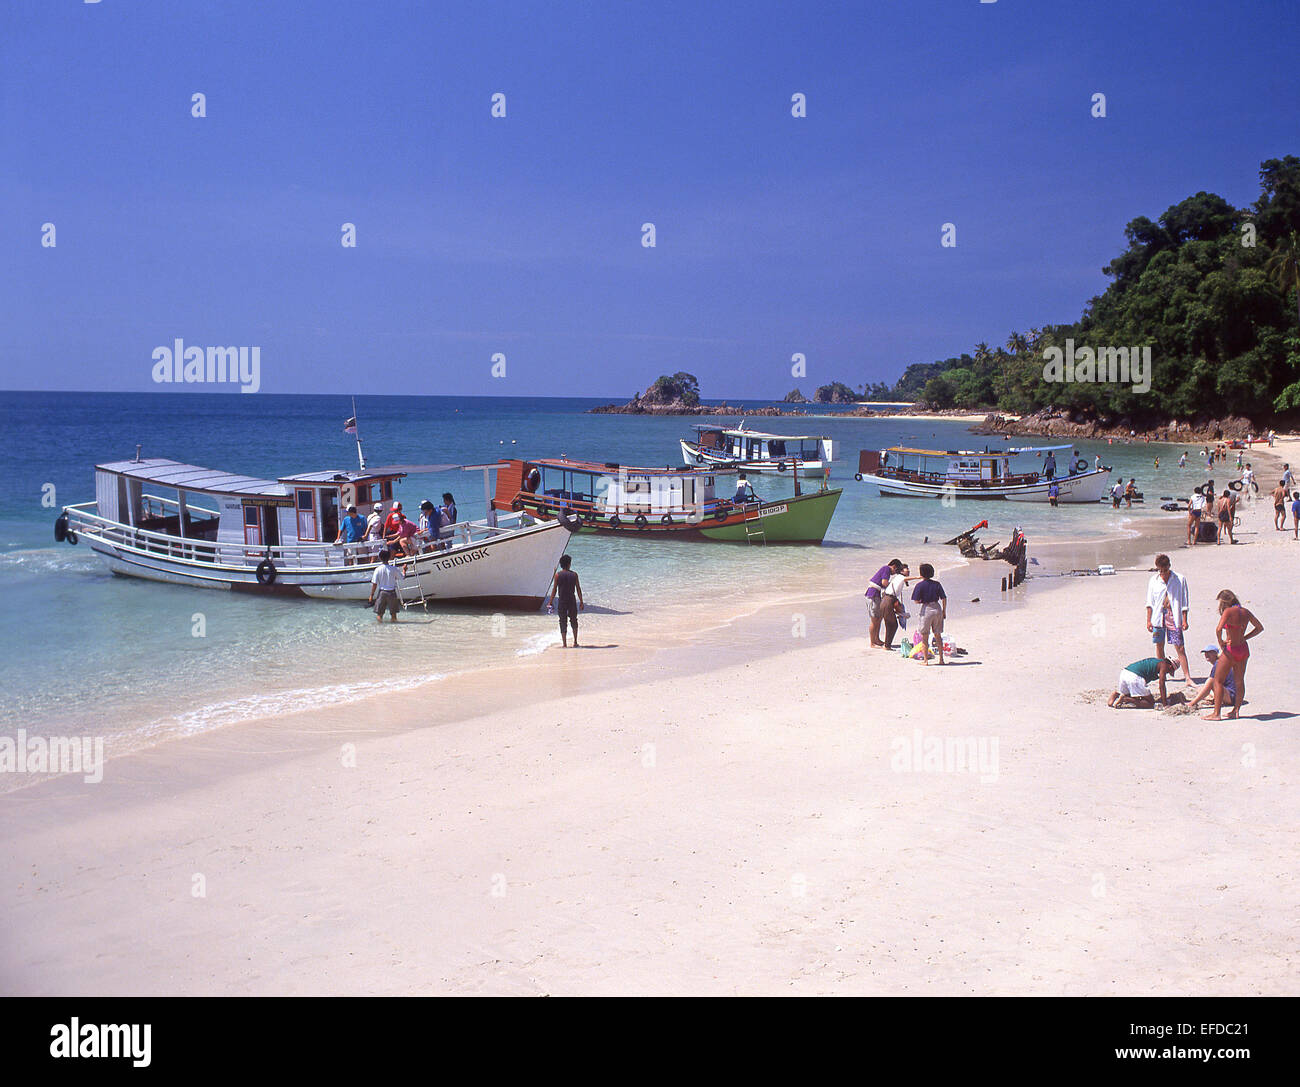 Plage sur l'île de Kapas (Pulau Kapas), l'État de Terengganu, Malaisie Banque D'Images